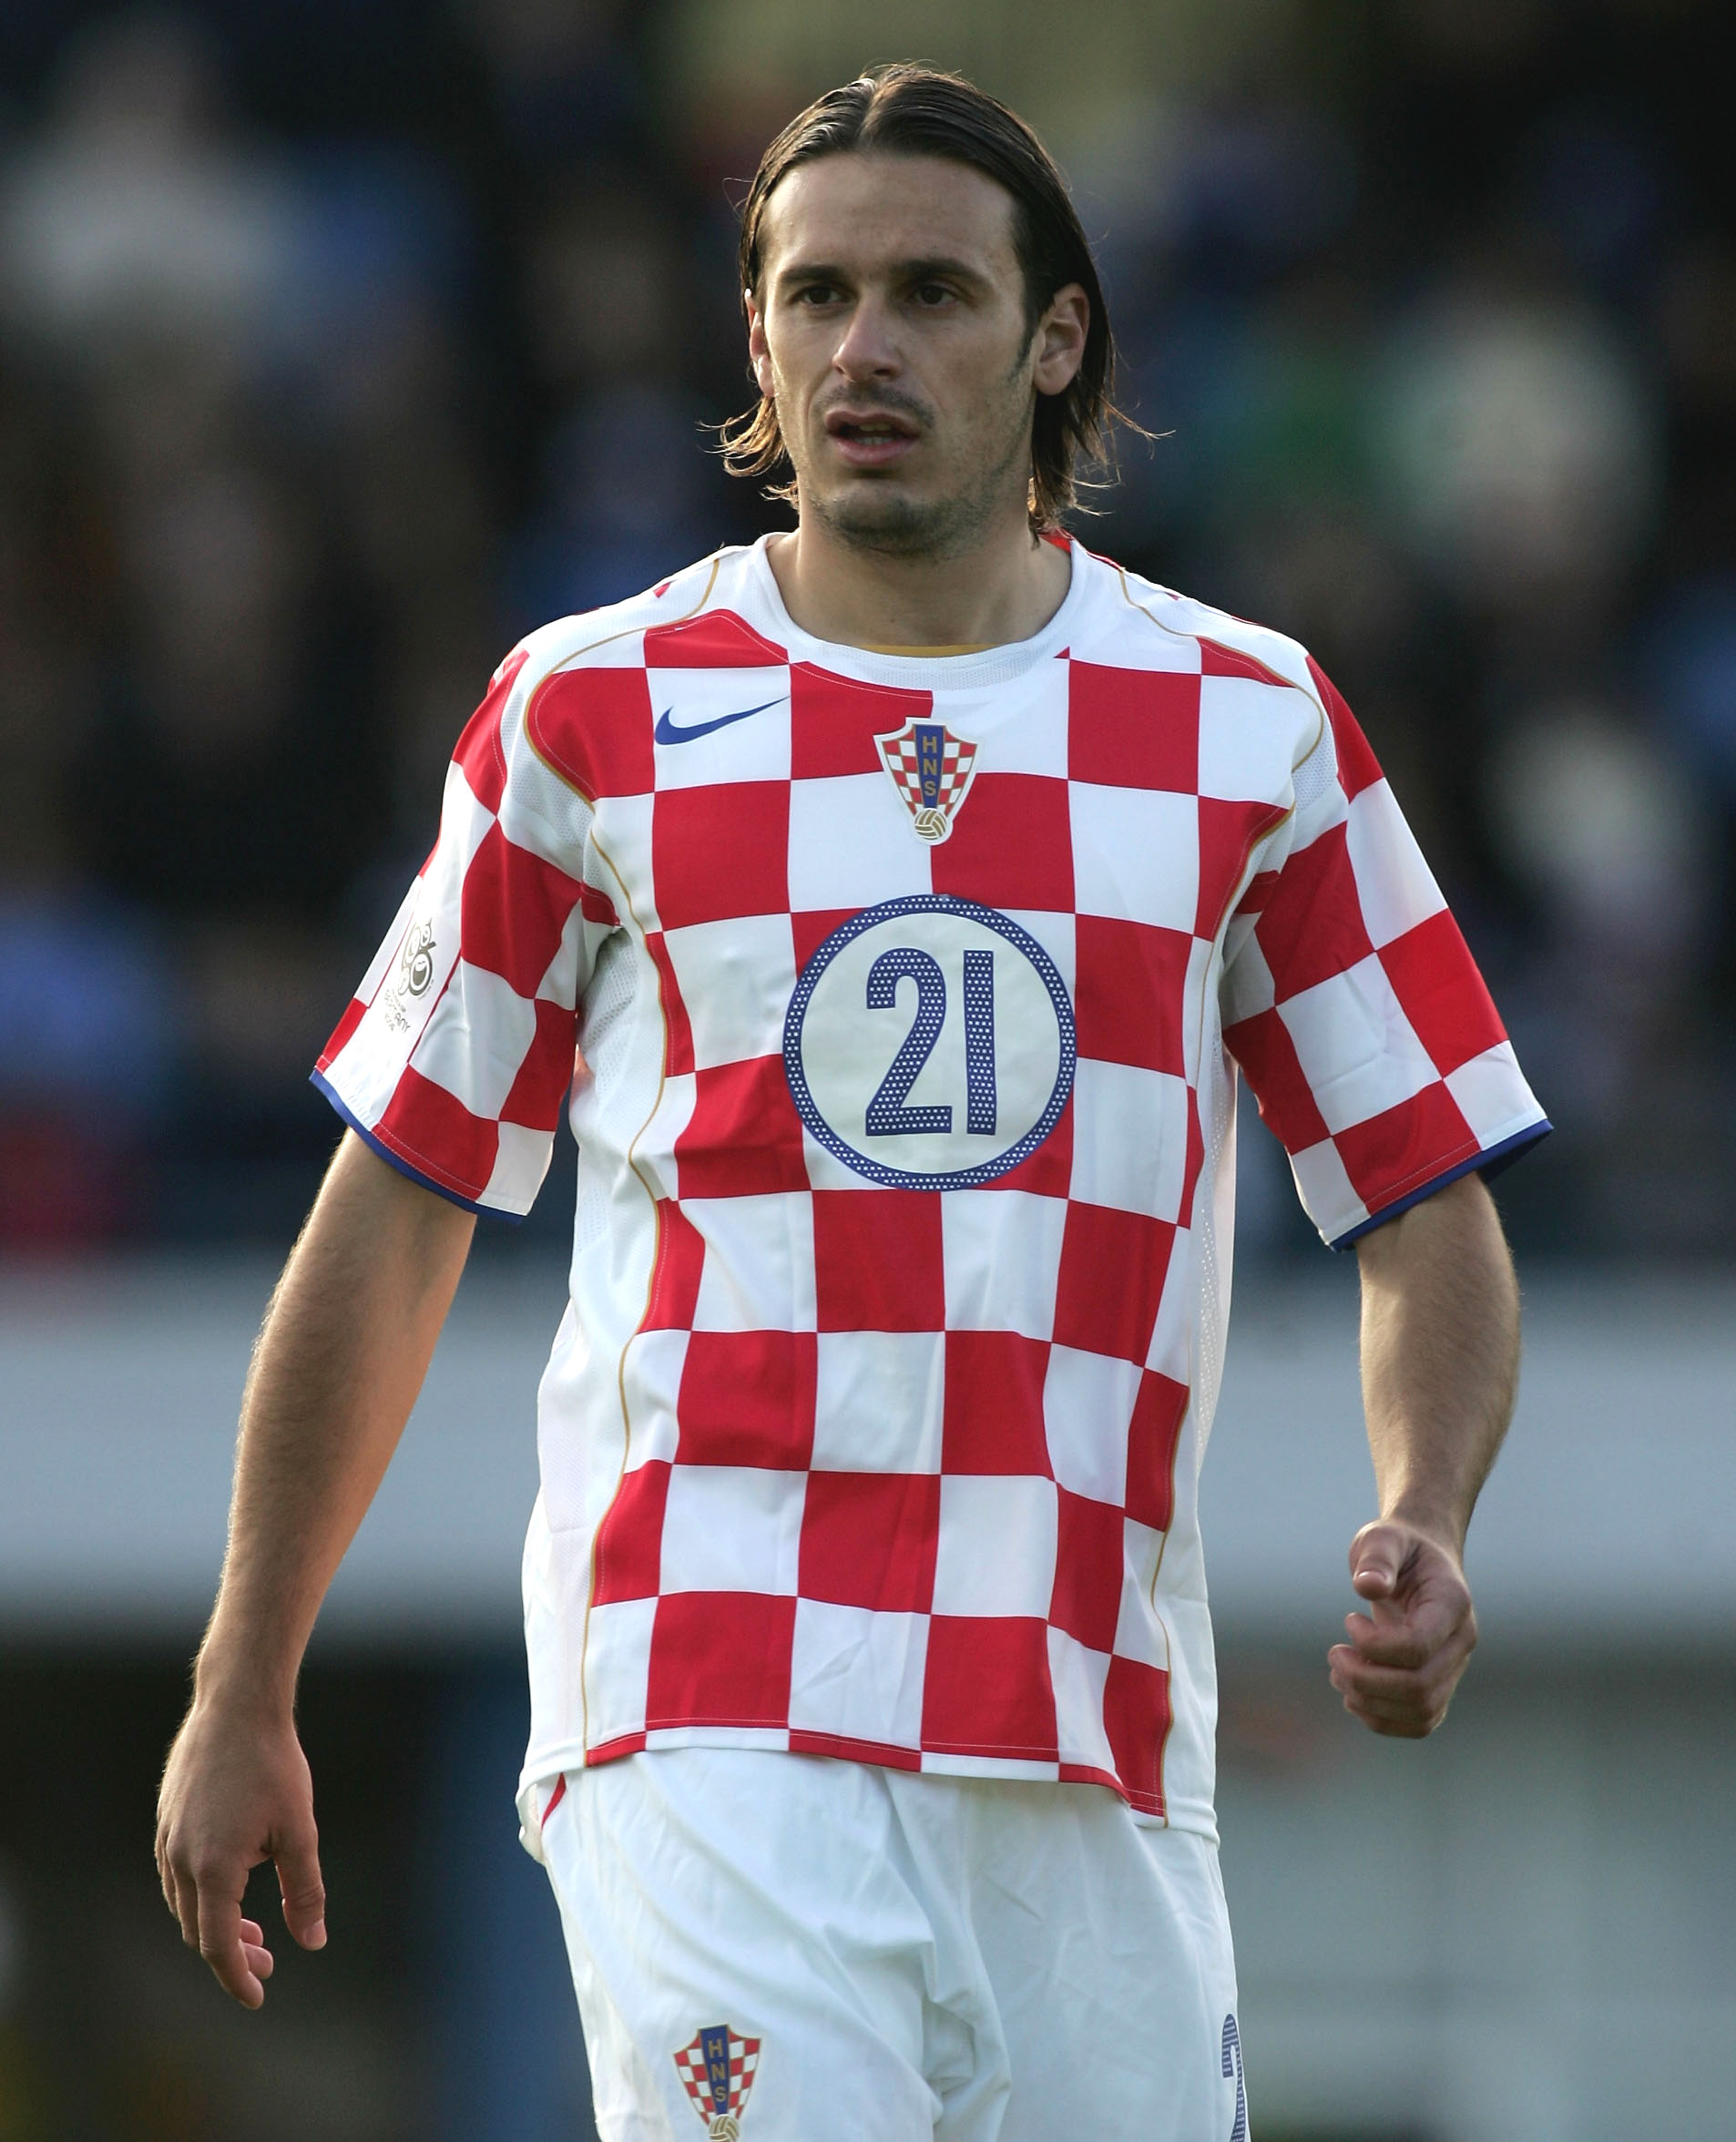 Der ehemalige kroatische Nationalspieler wurde 2021 zu einer bedingten Haftstrafe von einem Jahr und vier Jahren auf Bewährung verurteilt